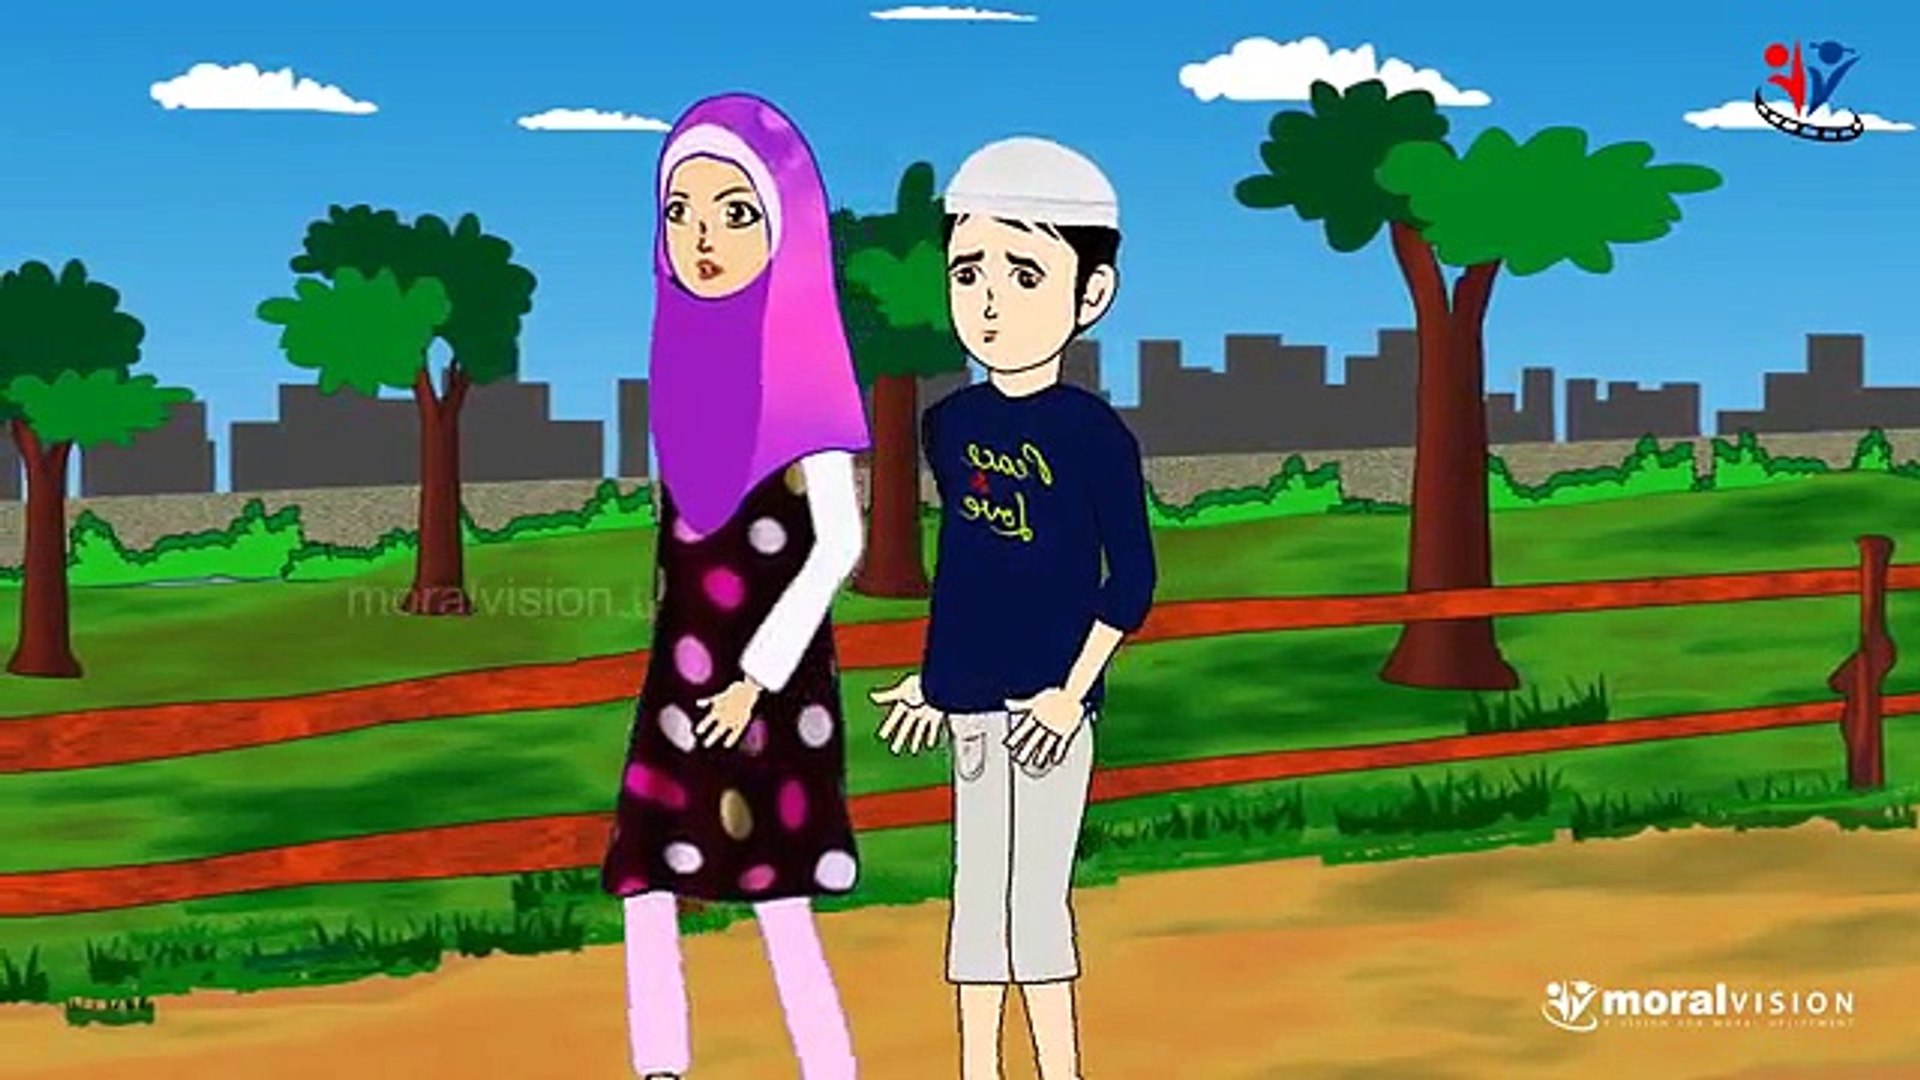 Abdul Bari Backbiting - English Version Cartoons - Islamic cartoon videos  -funny video-cartoon - video Dailymotion